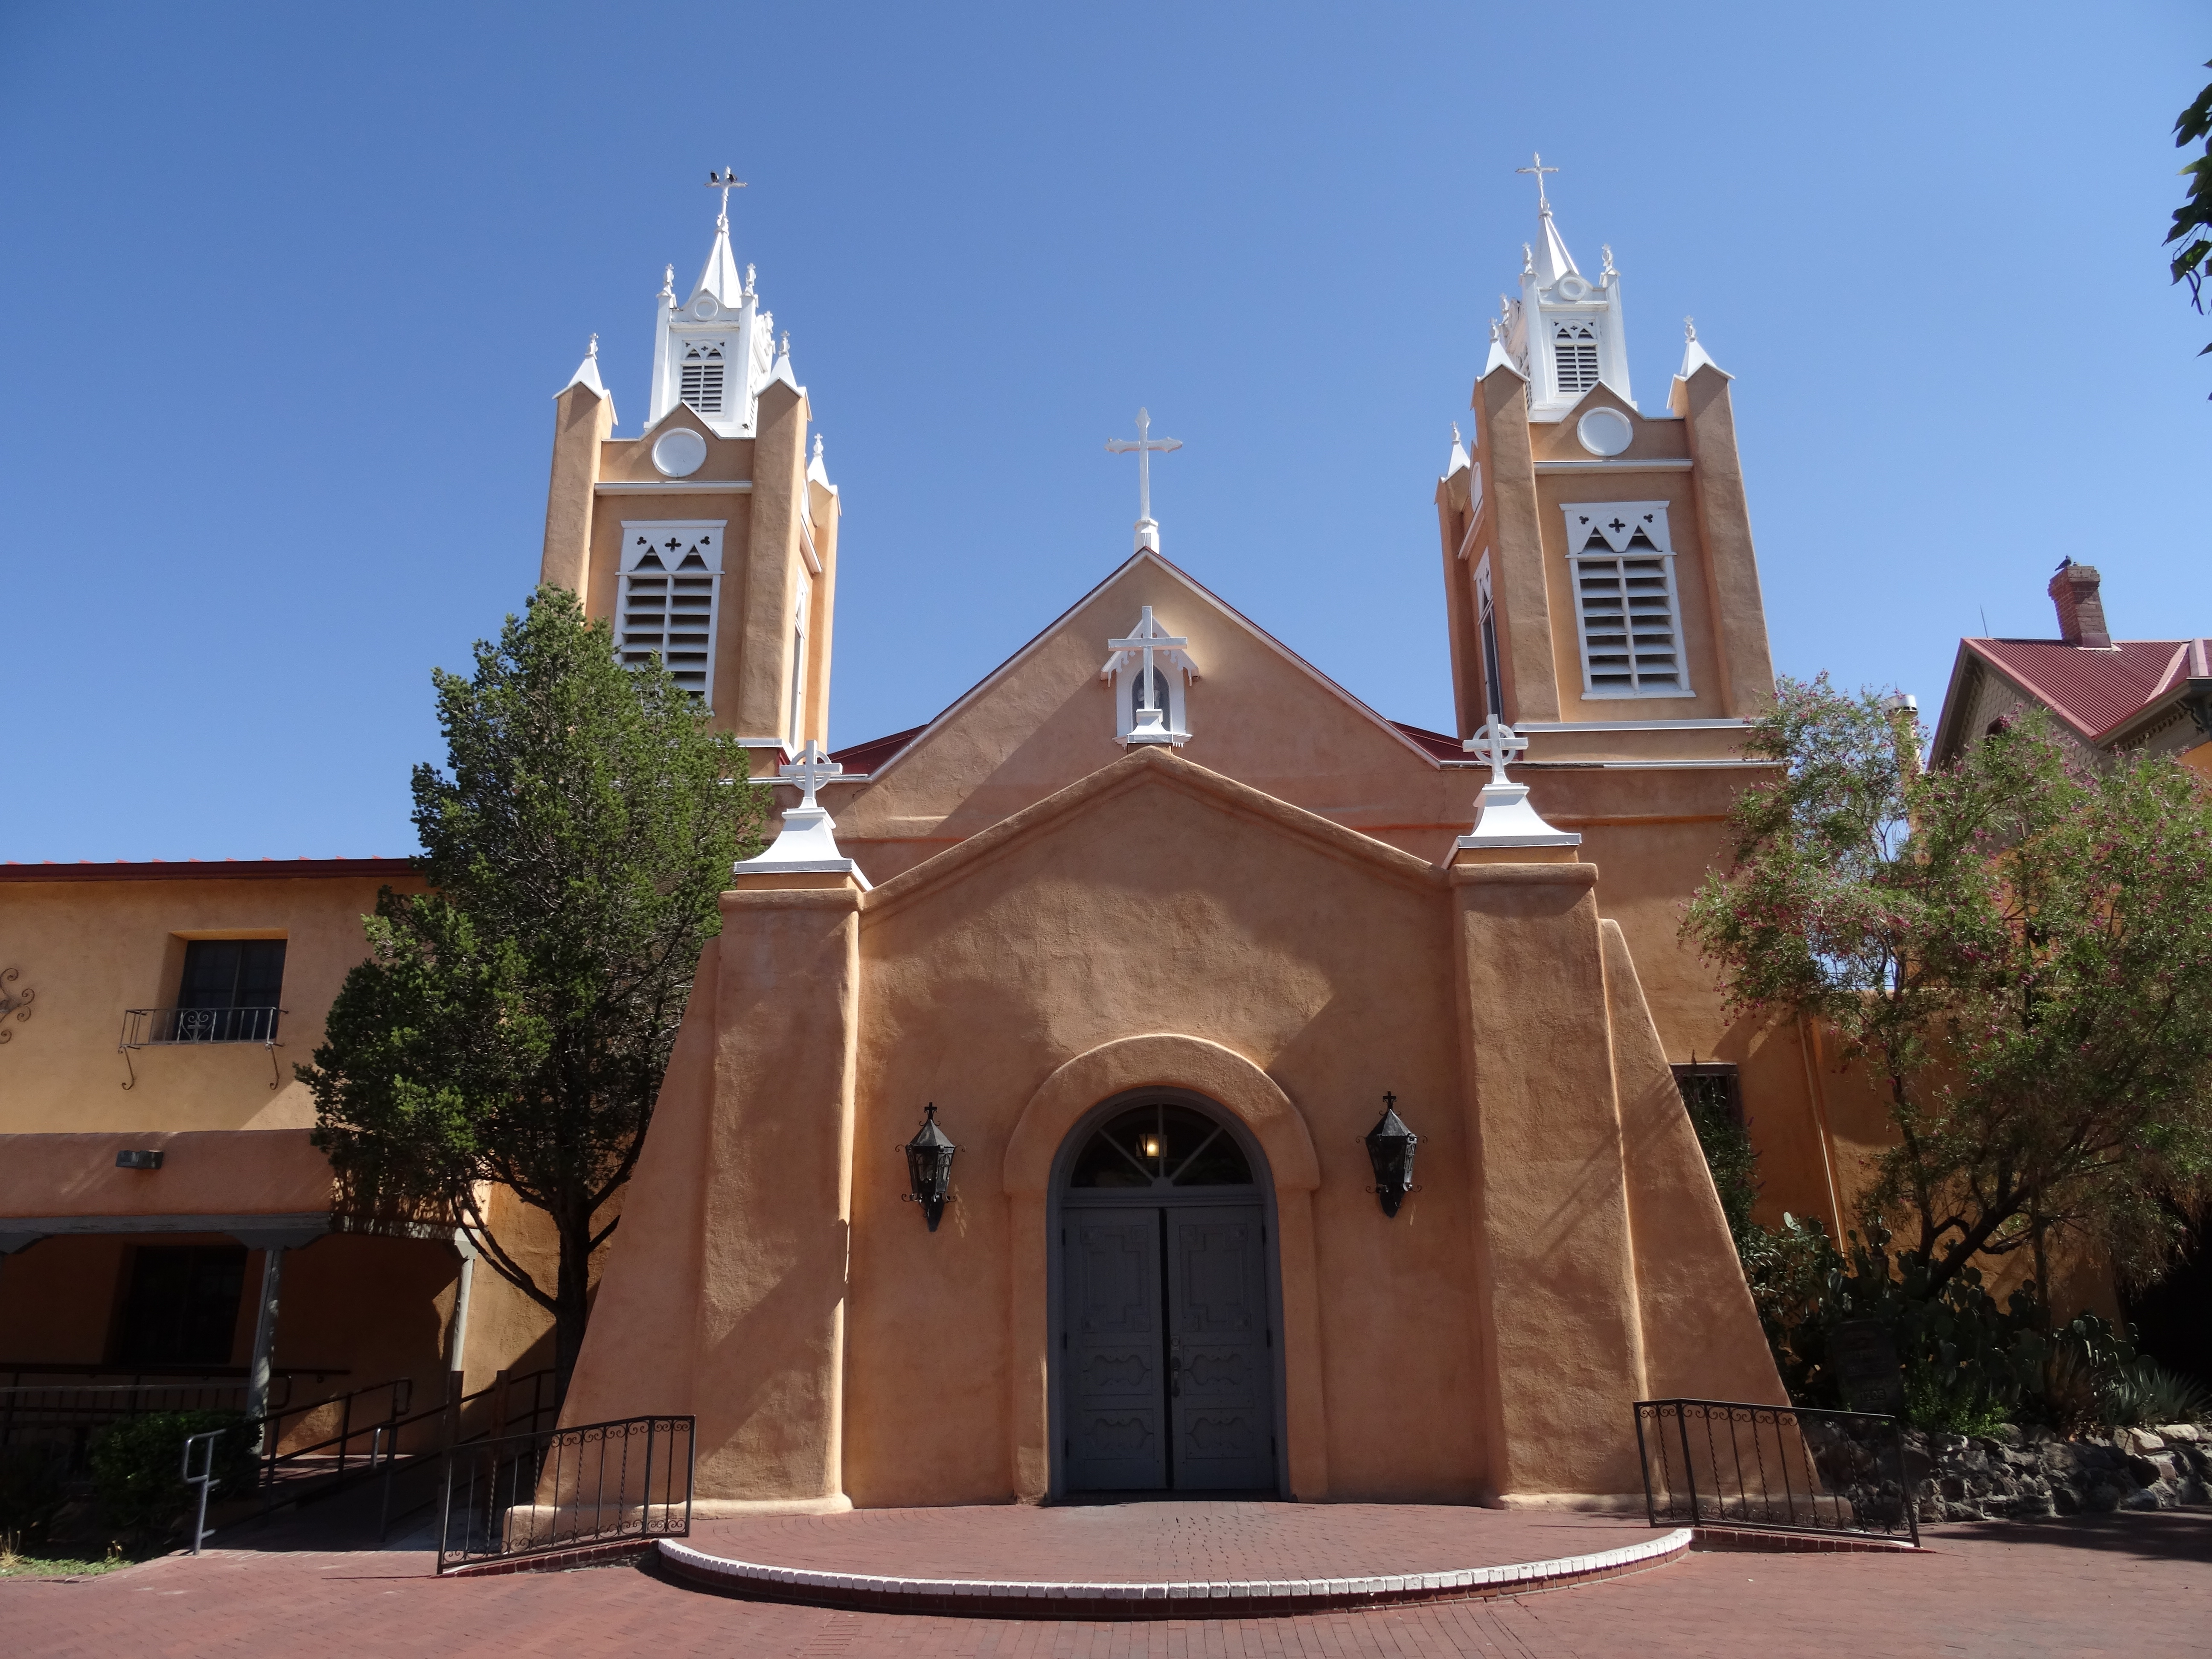 San Felipe de Neri Church, Old Town Plaza, Albuquerque